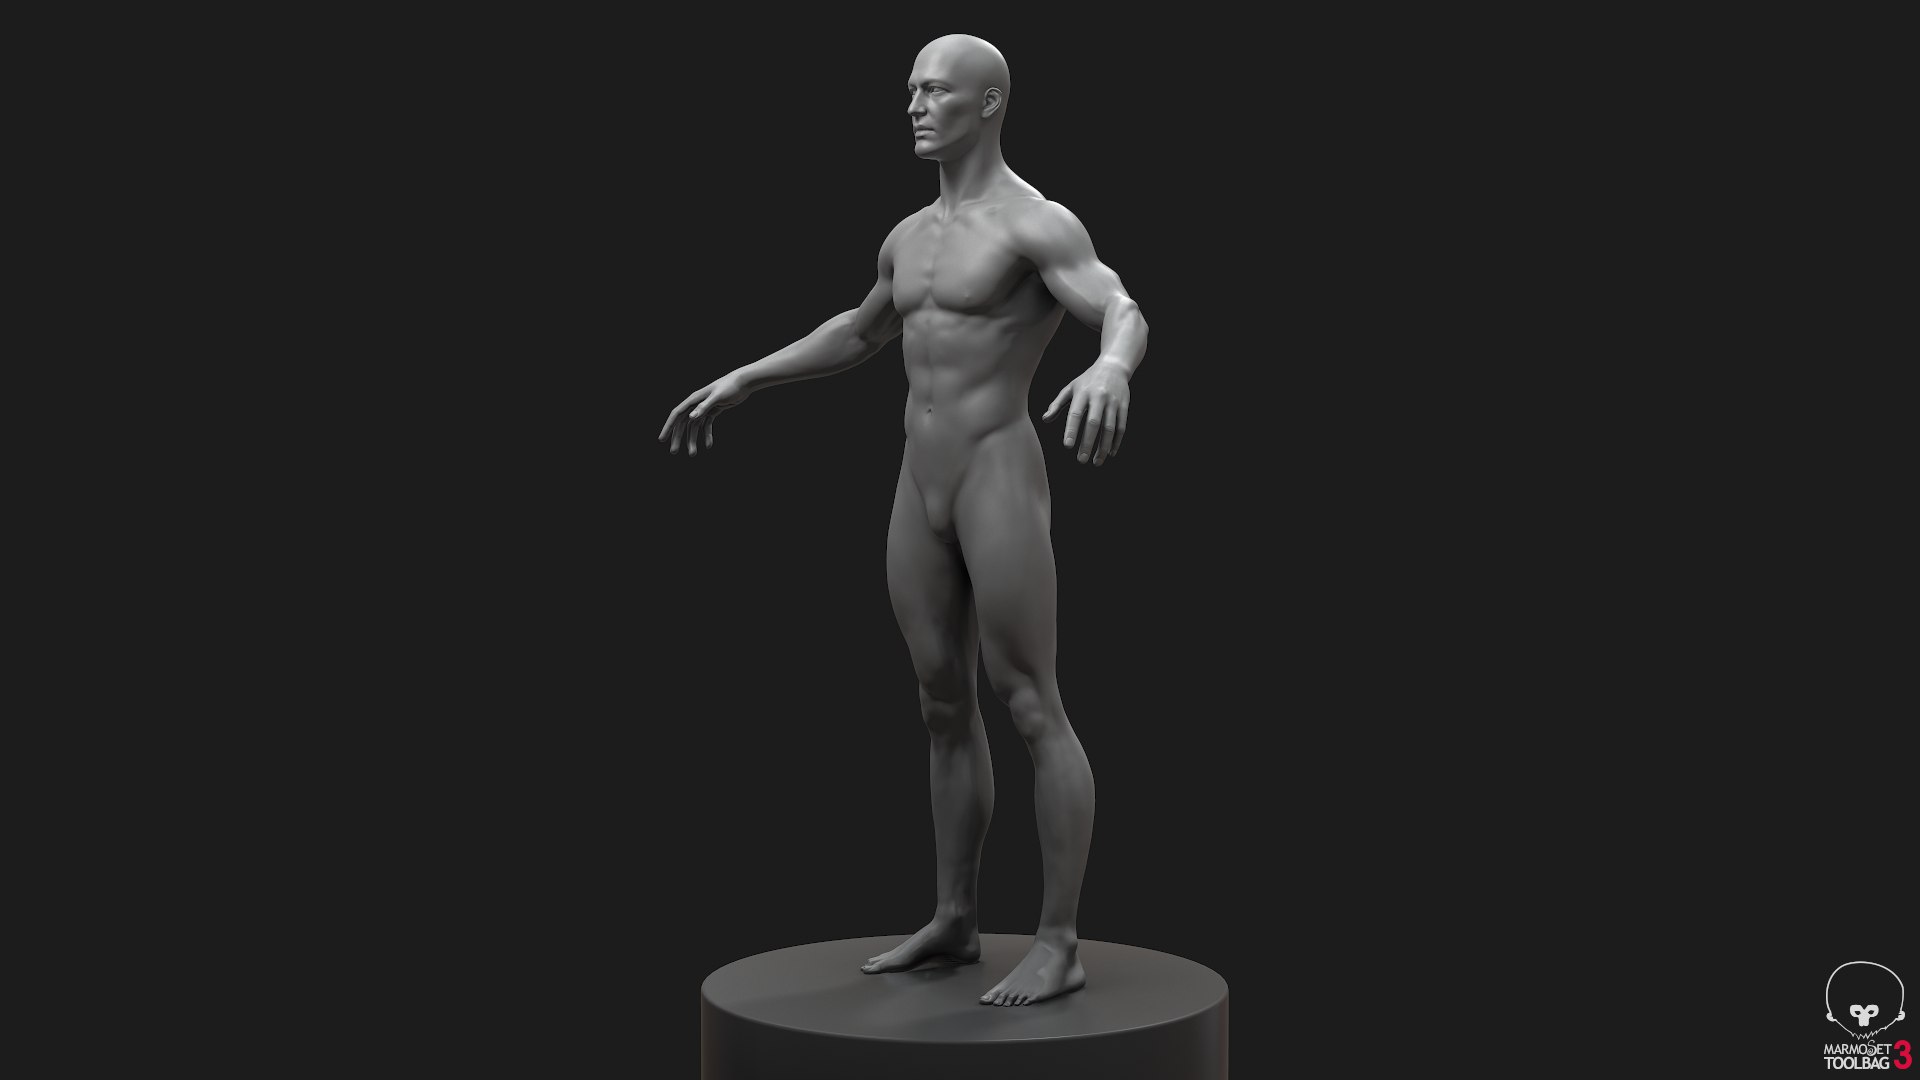 Human Athletic Male Body Base Mesh by RedaSaiko